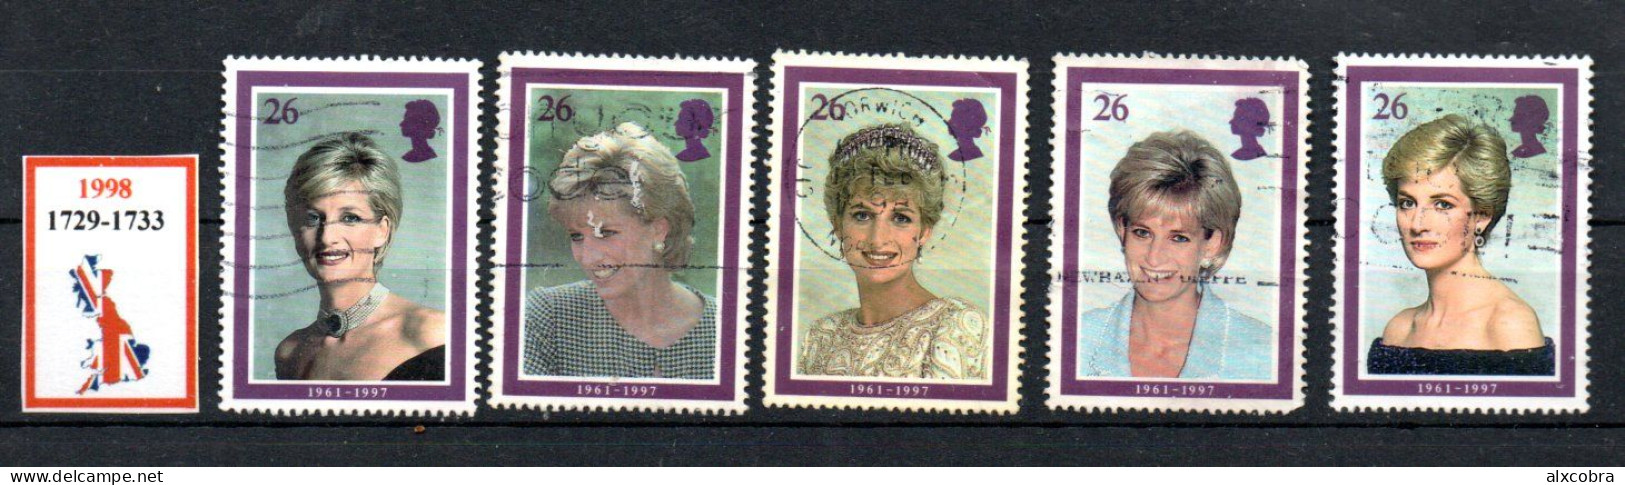 United Kingdom Lady Diana 1998 Michel 1729-1733 USED - Gebraucht